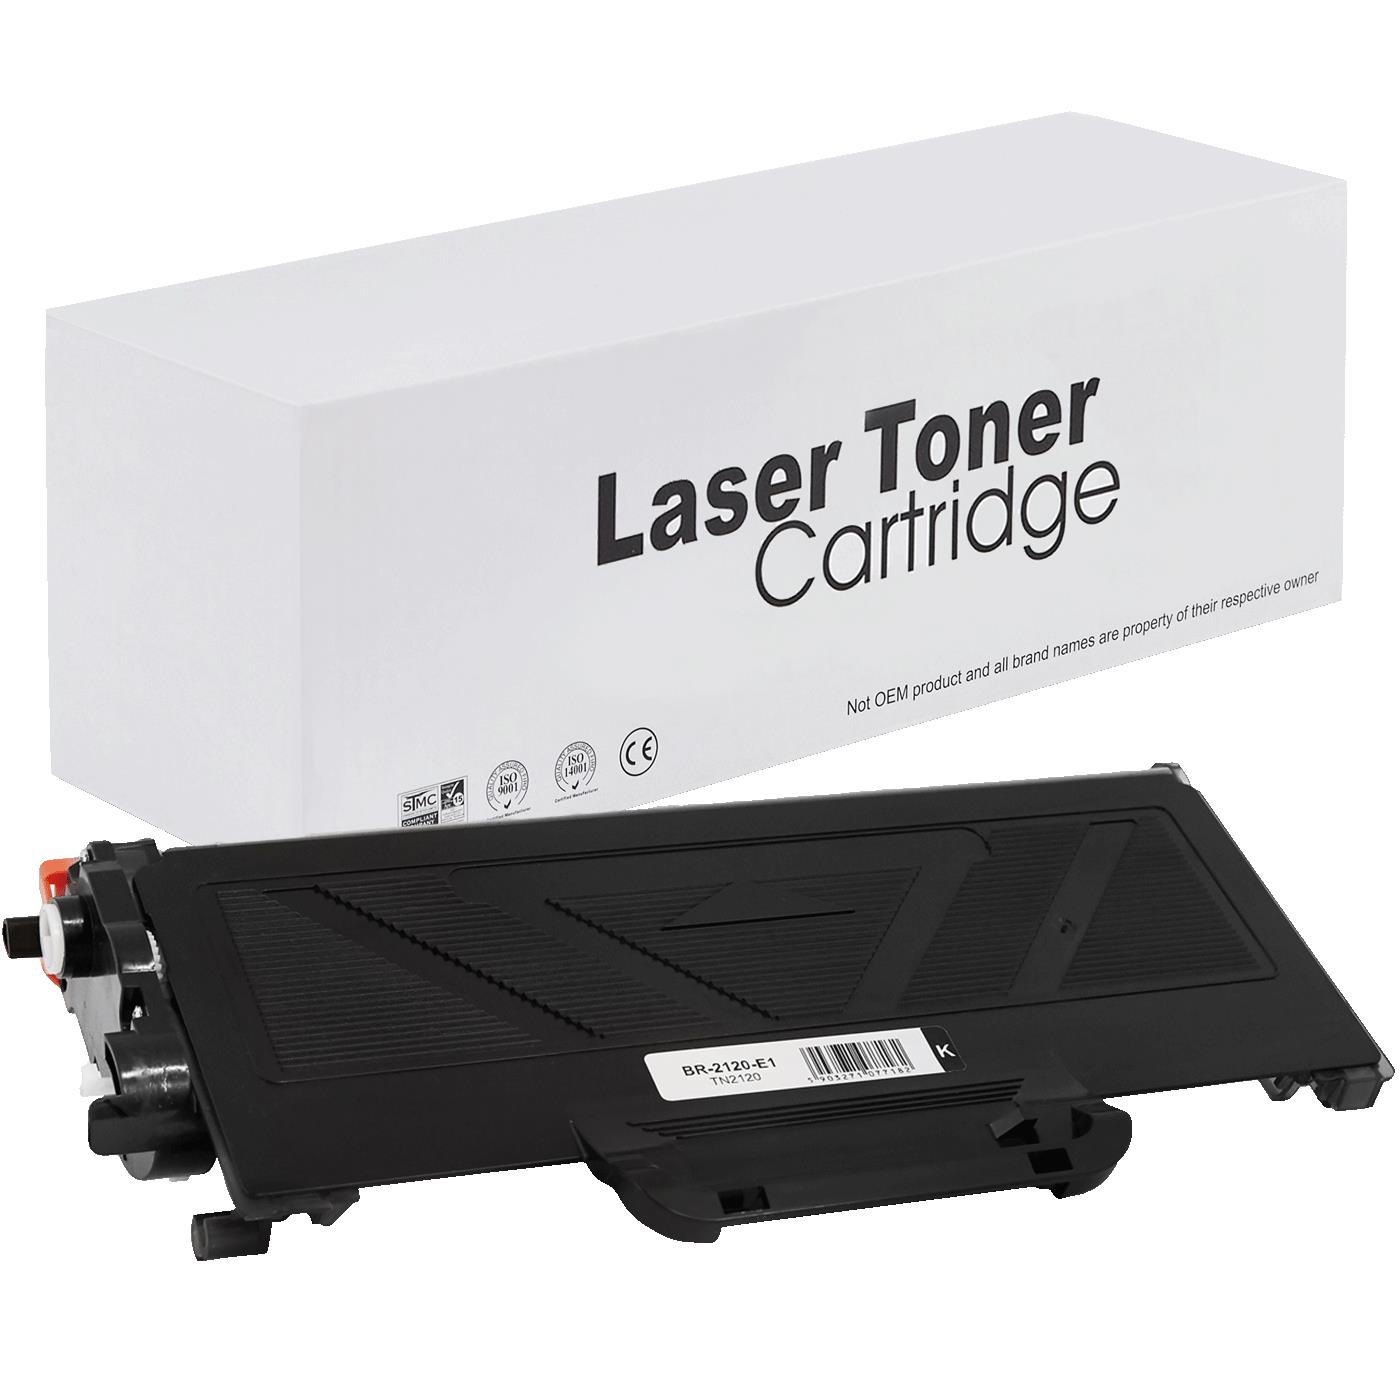 съвместима тонер касета за принтери и печатащи устройства на Brother MFC 7320 Toner BR-2120 | TN2120. Ниски цени, прецизно изпълнение, високо качество.